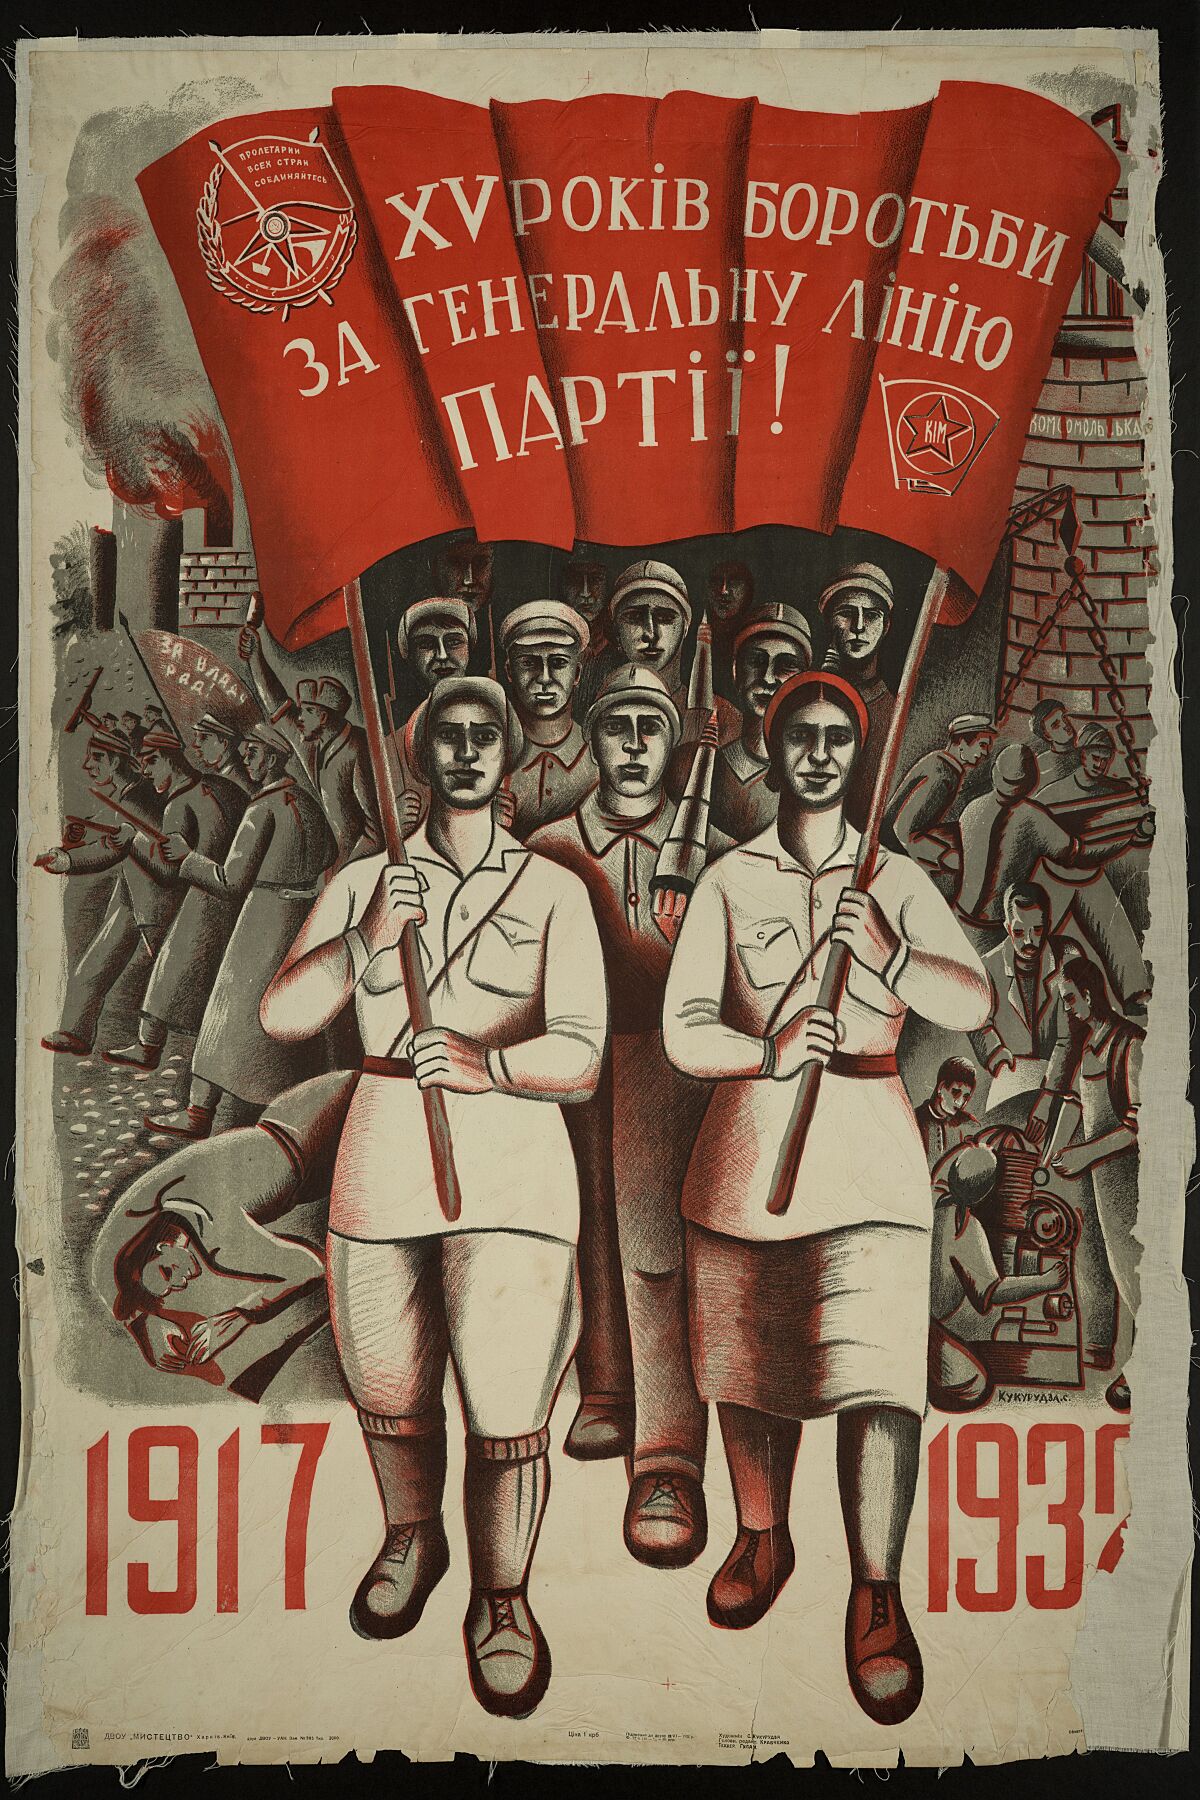 Soviet propaganda poster by S. Kukurudza celebrating the 15th anniversary of the 1917 Revolution